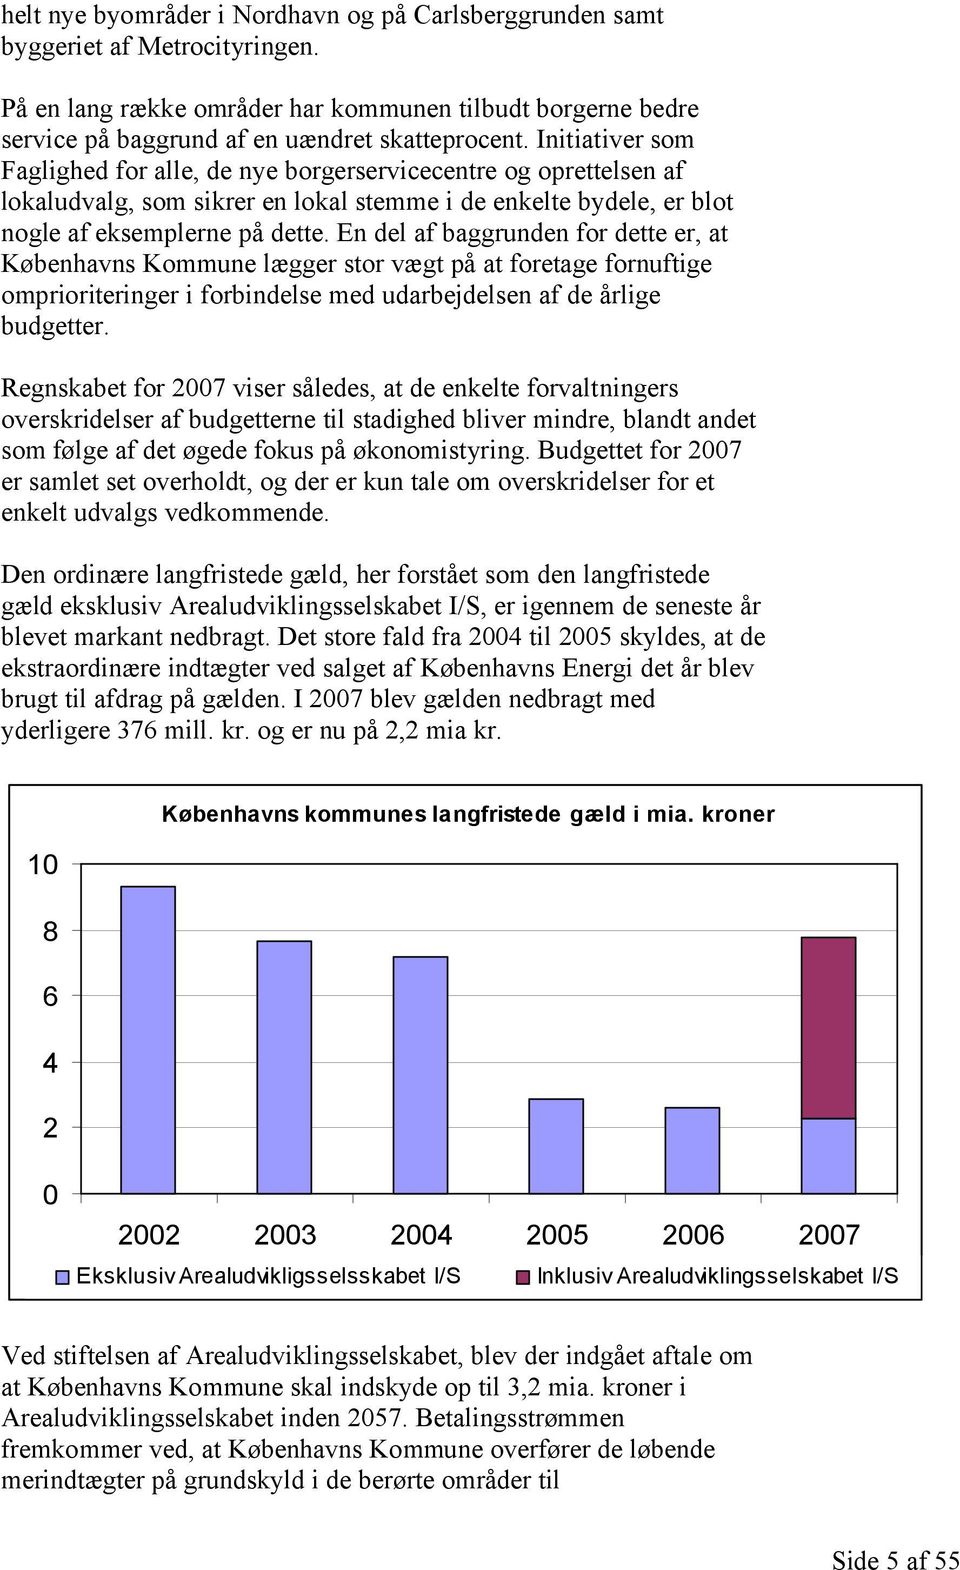 En del af baggrunden for dette er, at Københavns Kommune lægger stor vægt på at foretage fornuftige omprioriteringer i forbindelse med udarbejdelsen af de årlige budgetter.